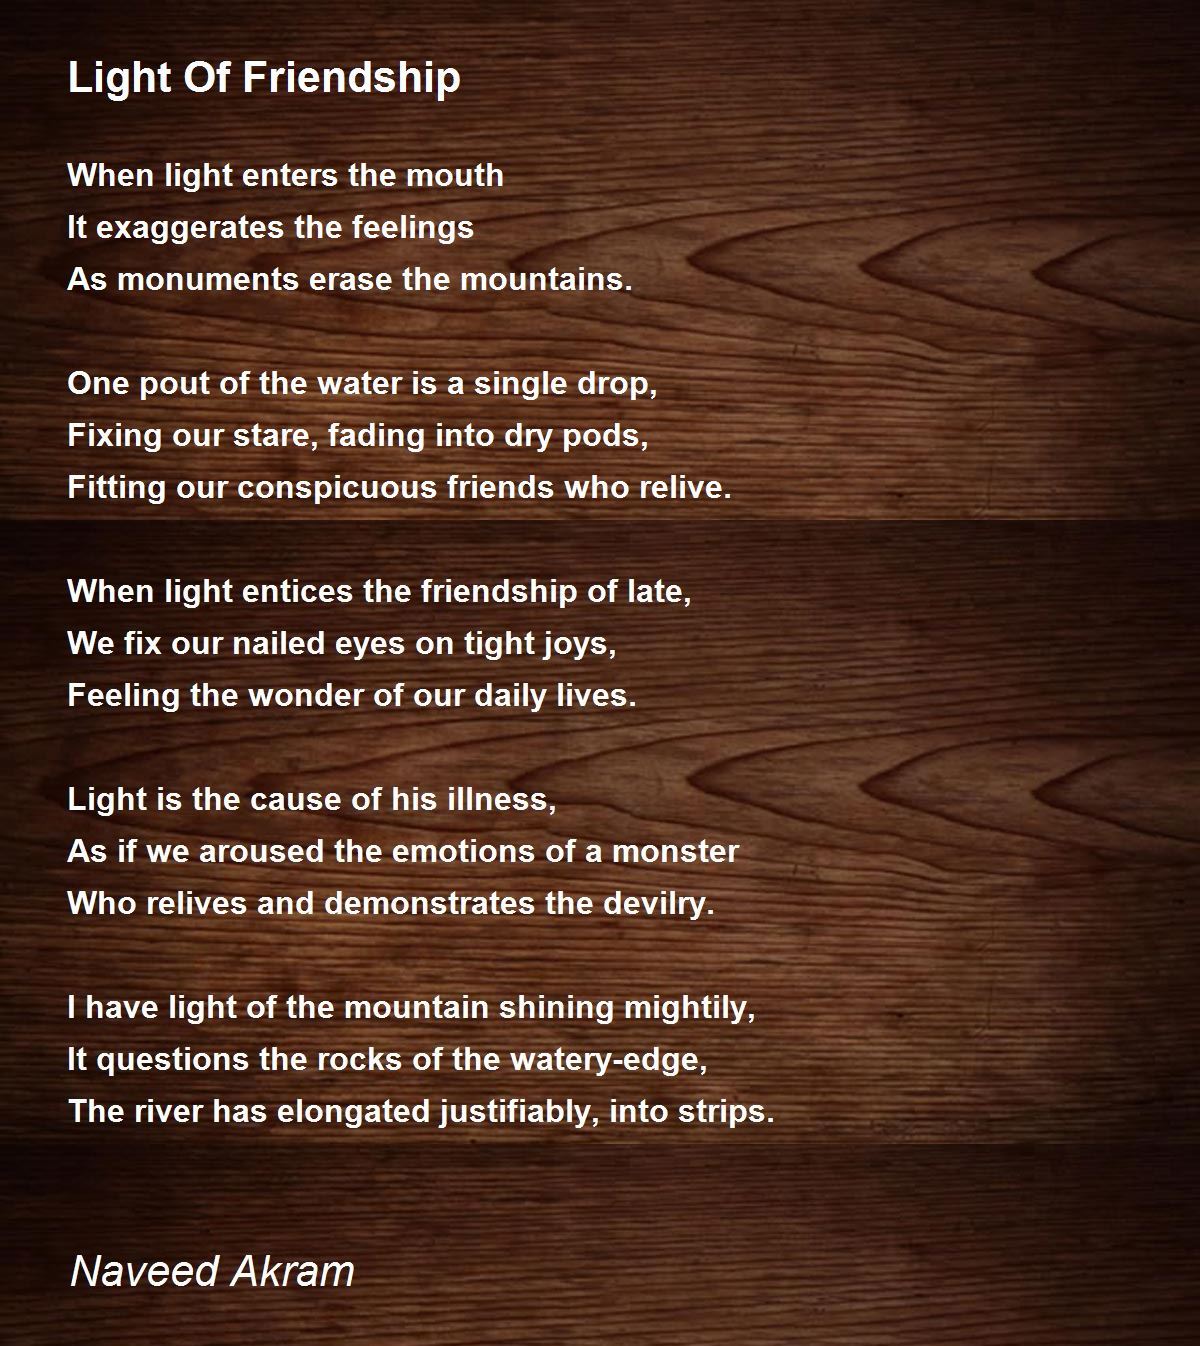 light-of-friendship-light-of-friendship-poem-by-naveed-akram